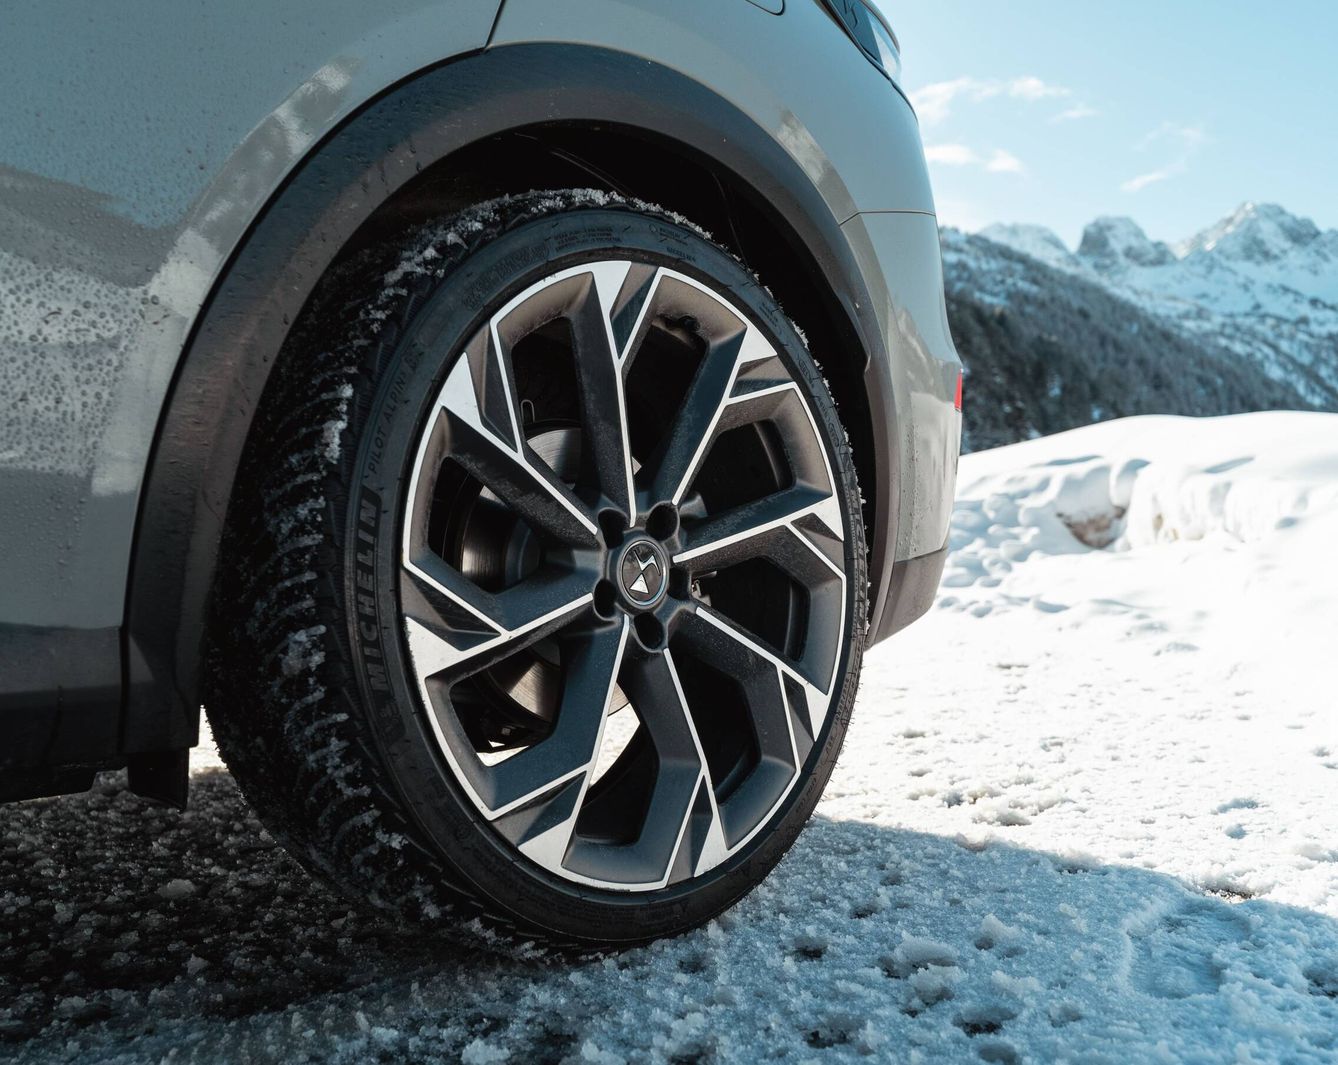 En nuestra prueba el DS7 iba equipado con neumáticos Michelin 'All Season'.